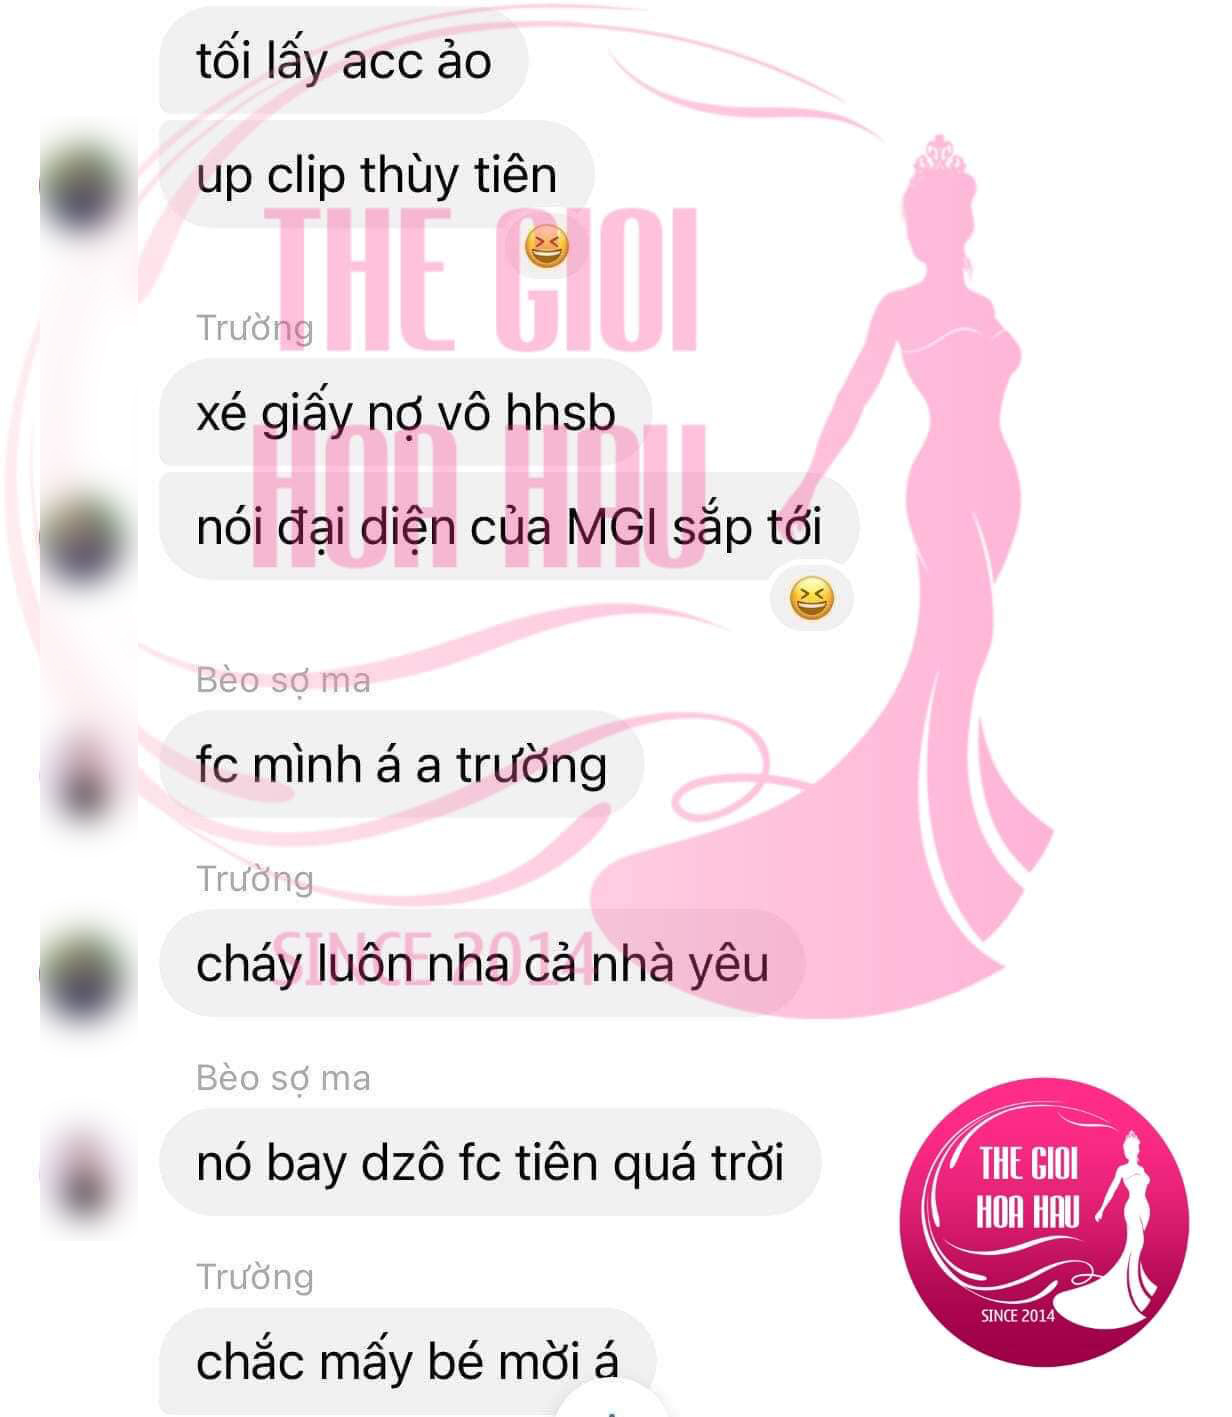 Đoạn tin nhắn được cho từ group chat FC Khánh Vân, kêu gọi phát tán clip xé giấy nợ của Thuỳ Tiên